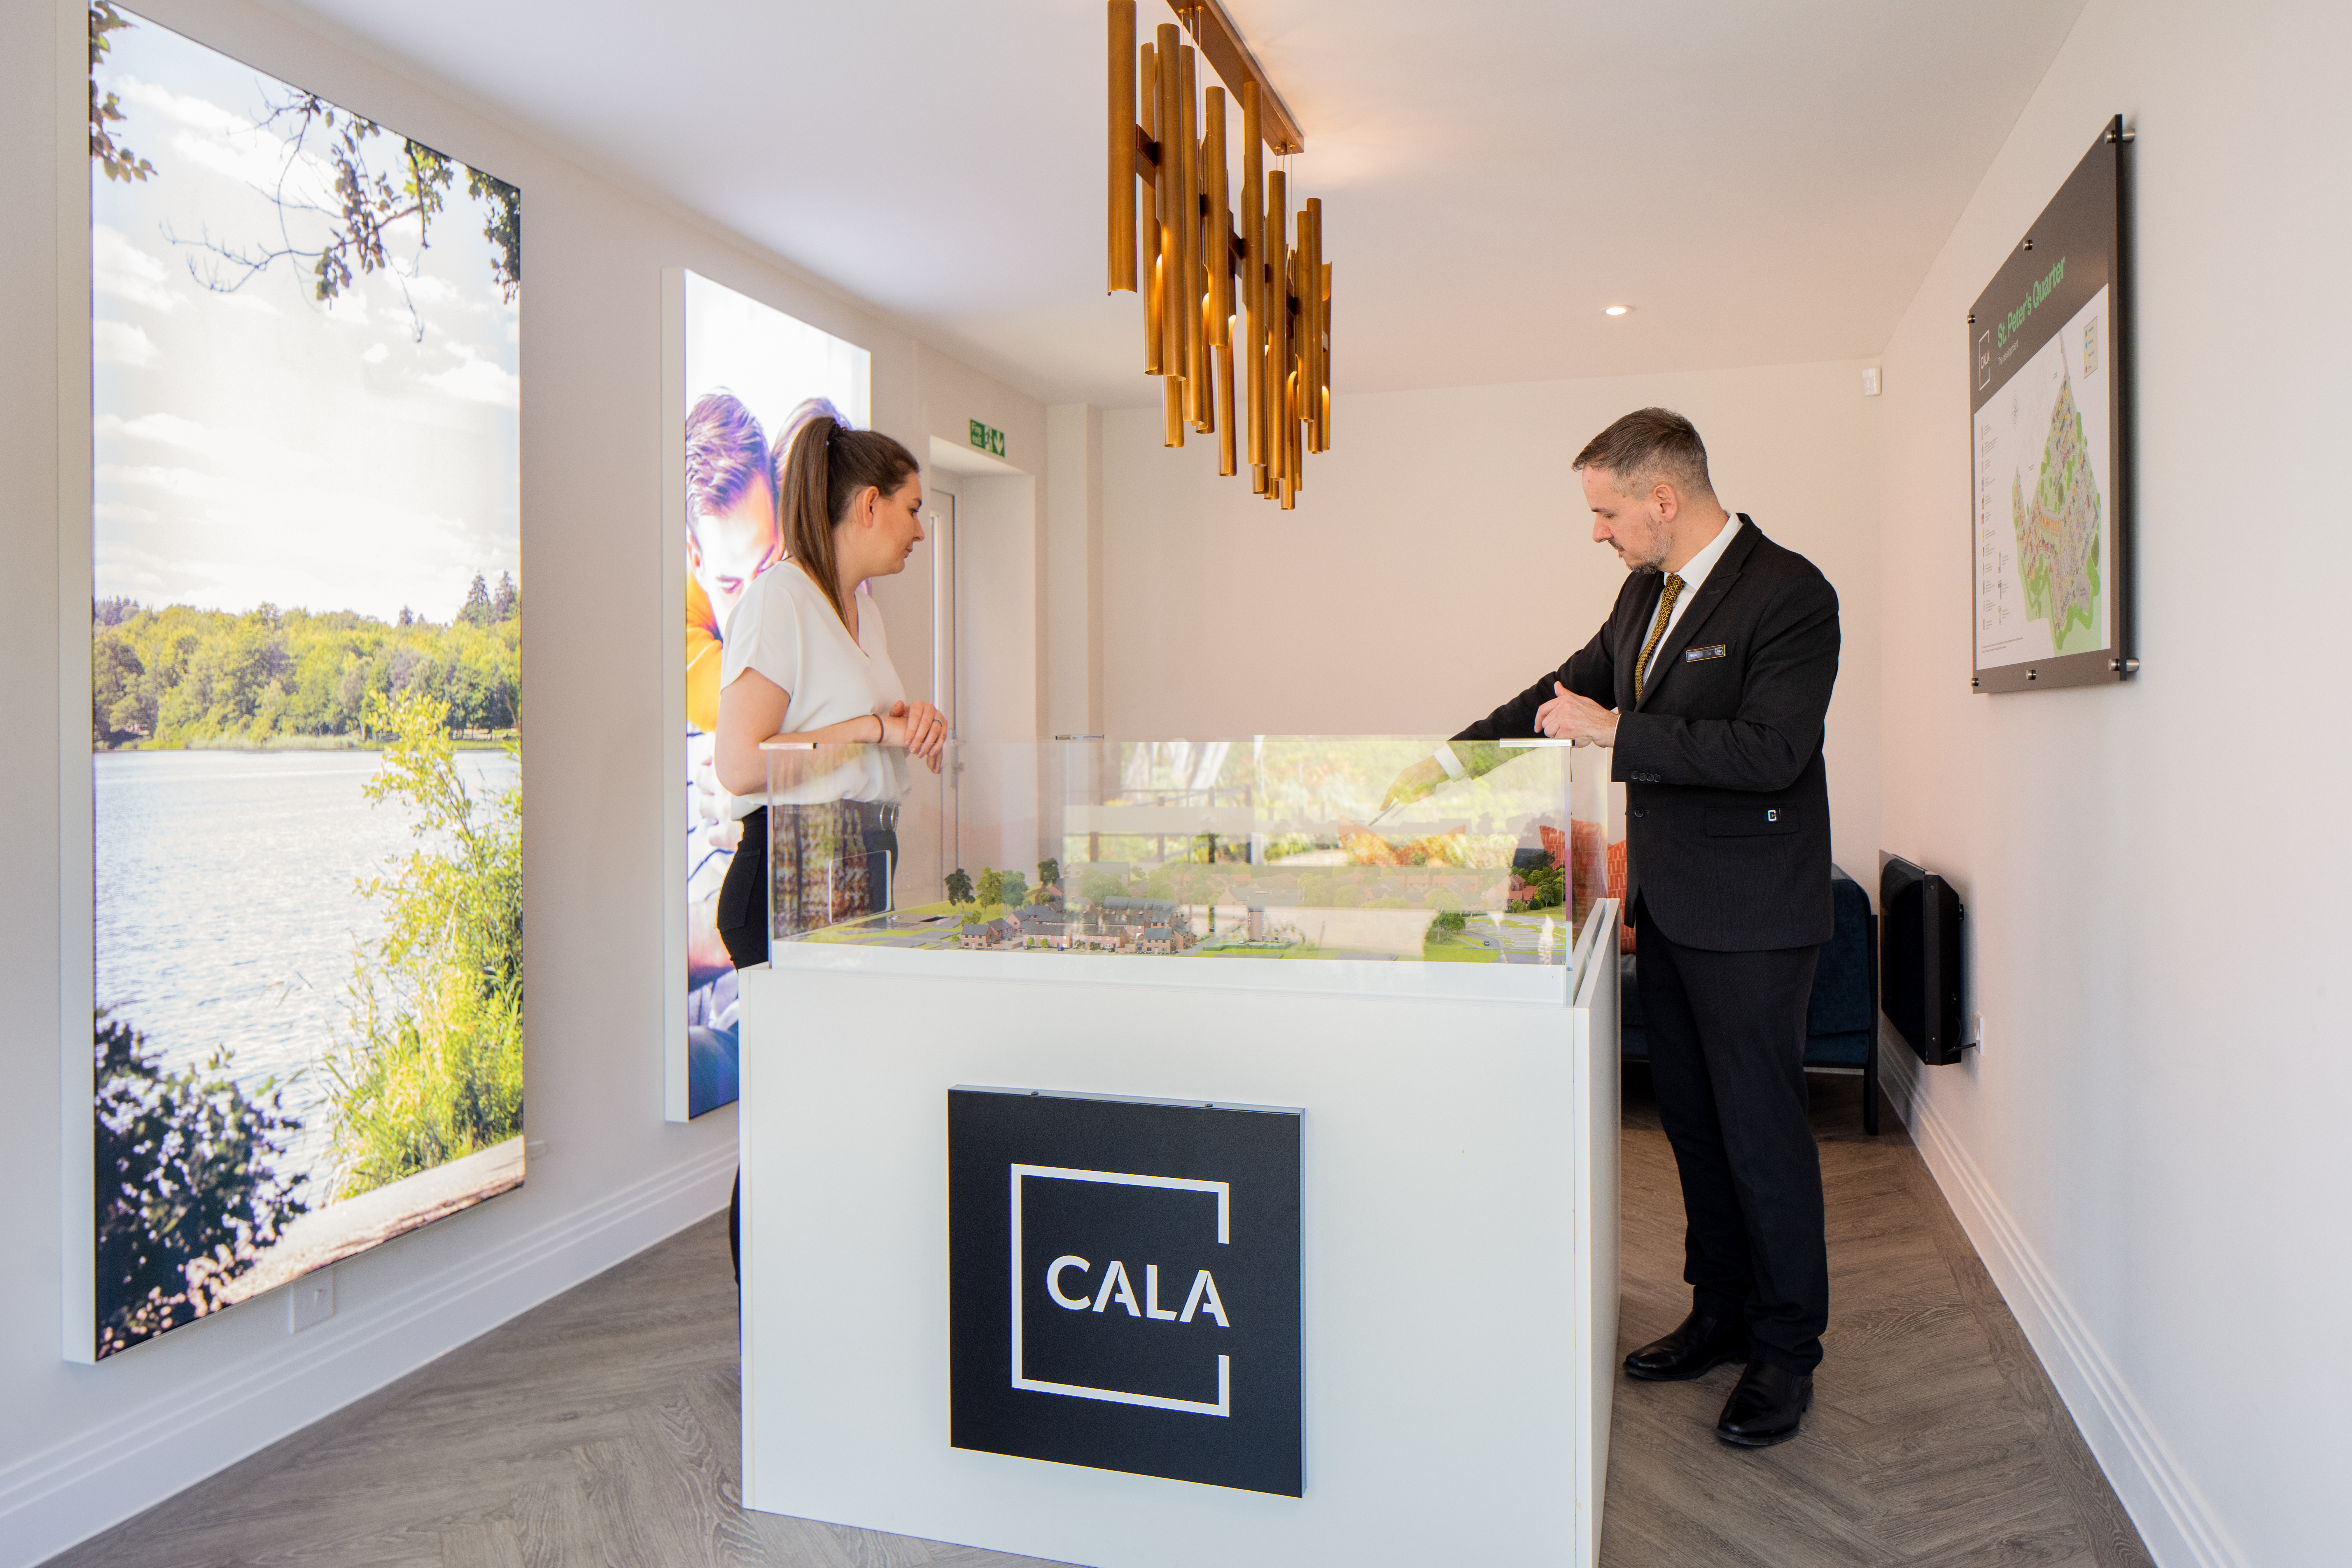 Cala receives five-star homebuilder rating